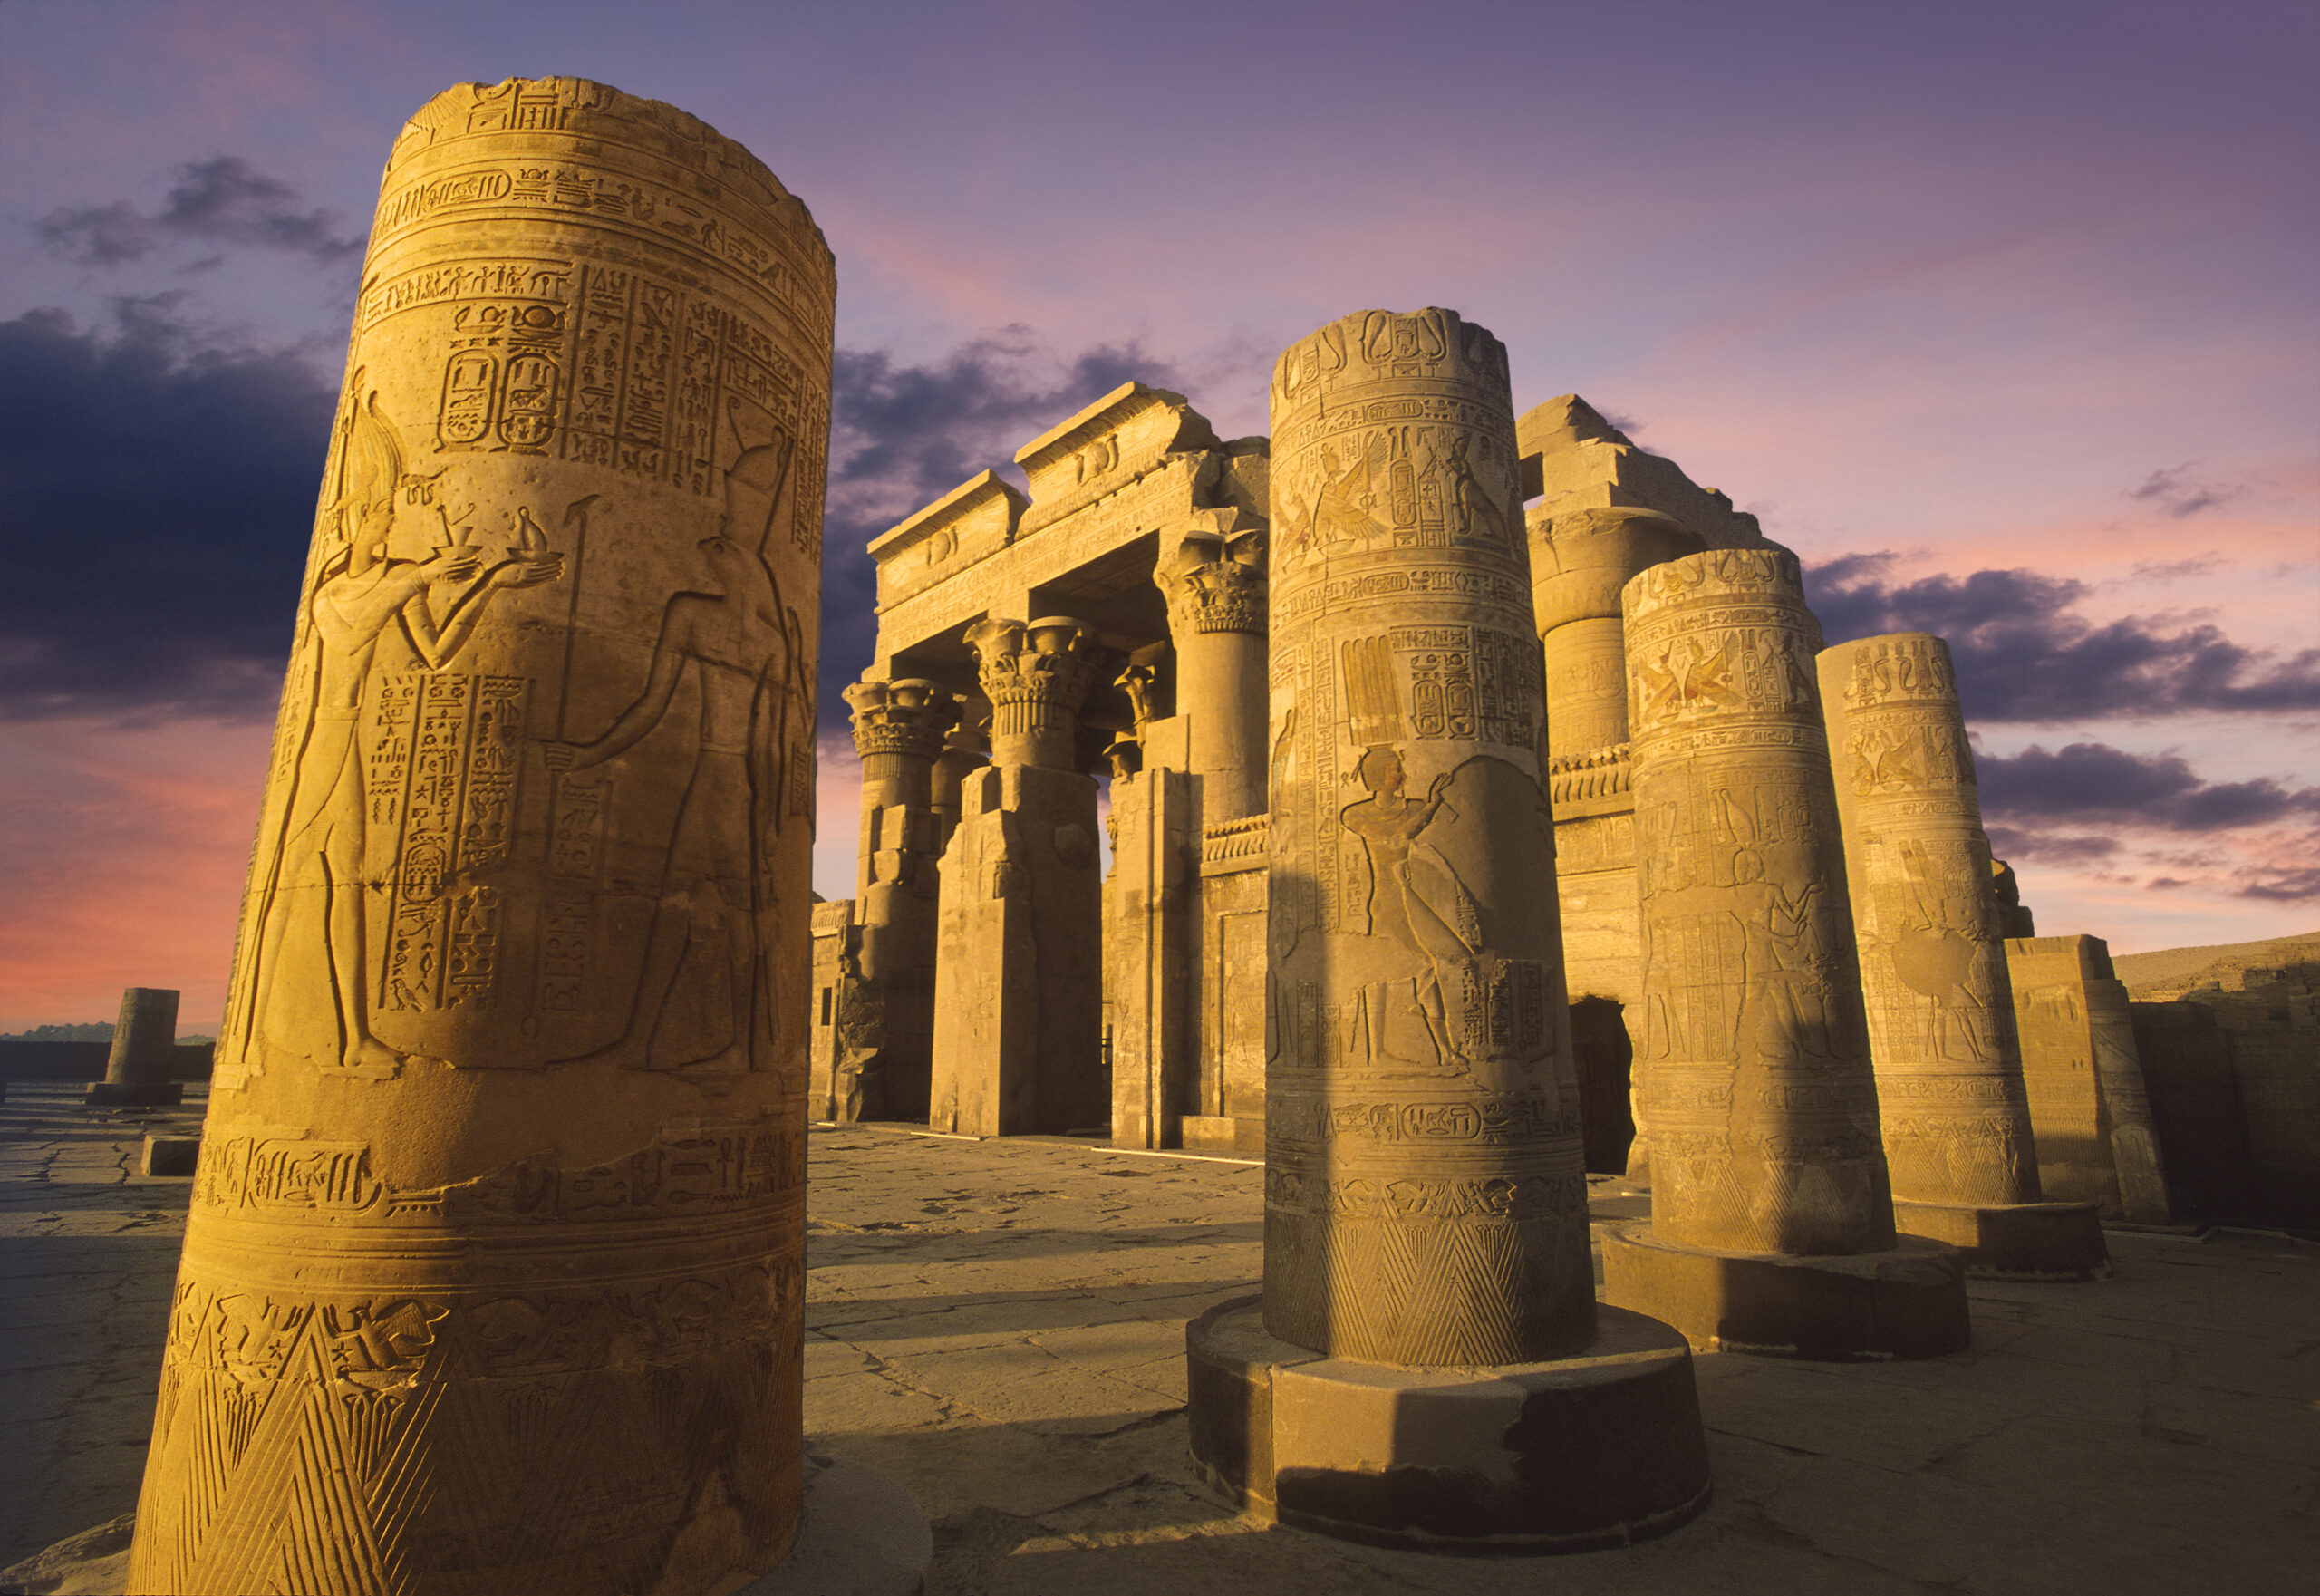 Egiptul a devenit unul dintre centrele intelectuale și culturale ale lumii arabe și islamice, un statut care a fost consolidat la mijlocul secolului al XIII-lea, când armatele mongole au jefuit Bagdadul și au pus capăt califatului abbasid. Templul Kom Ombo, sursa foto dreamstime